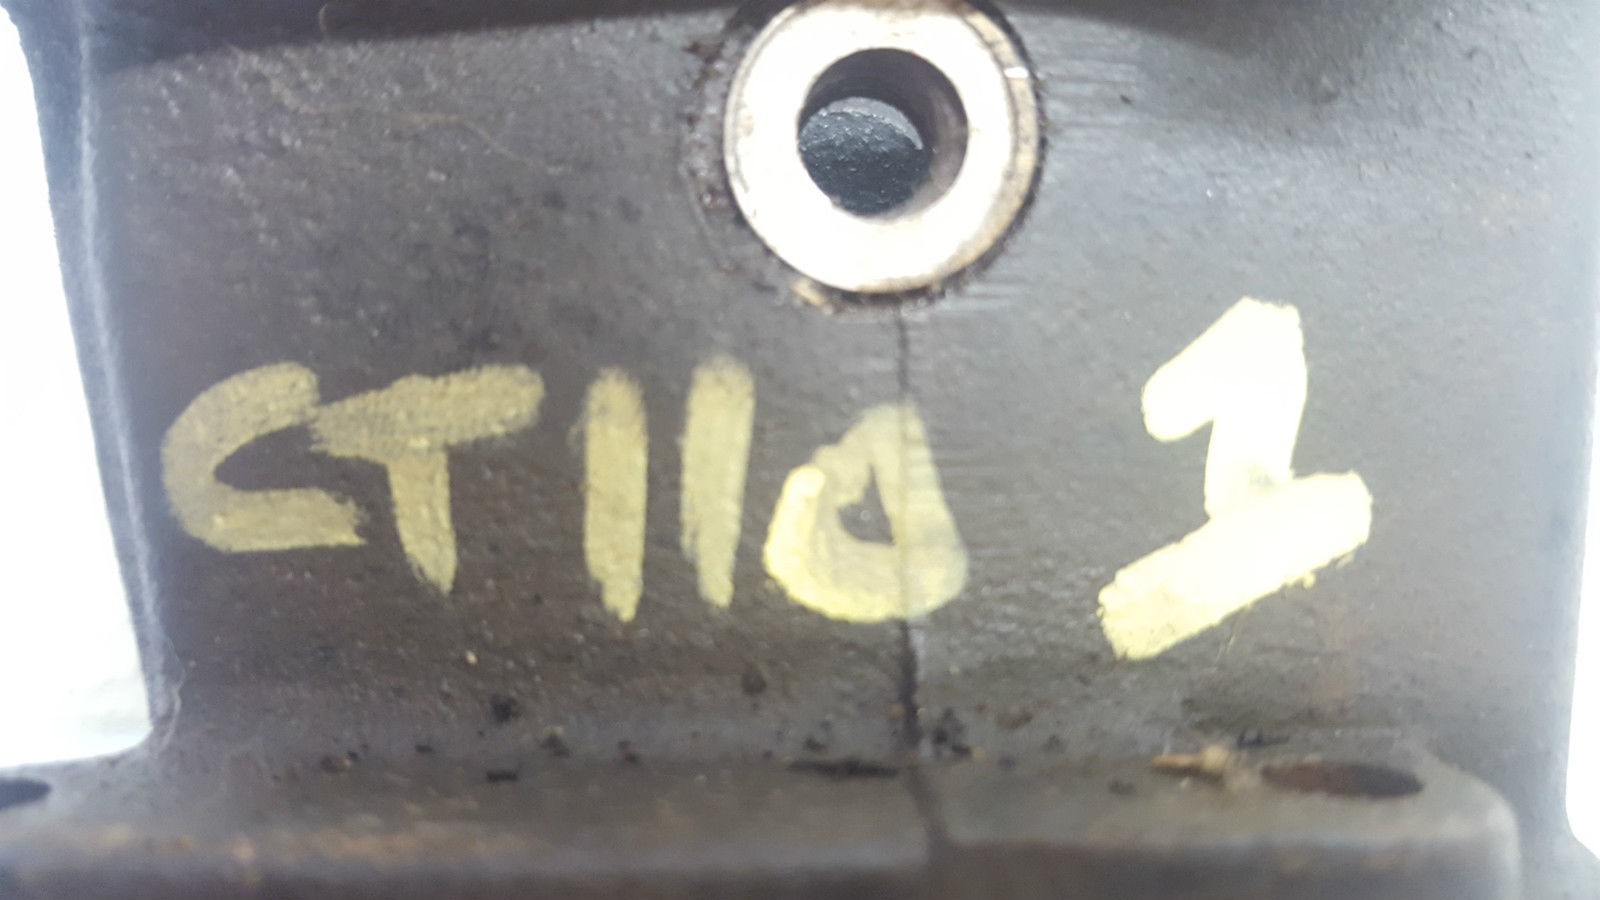 Barrel Cylinder Jug Pot for Honda CT110 CT 110 51.6mm Bore.